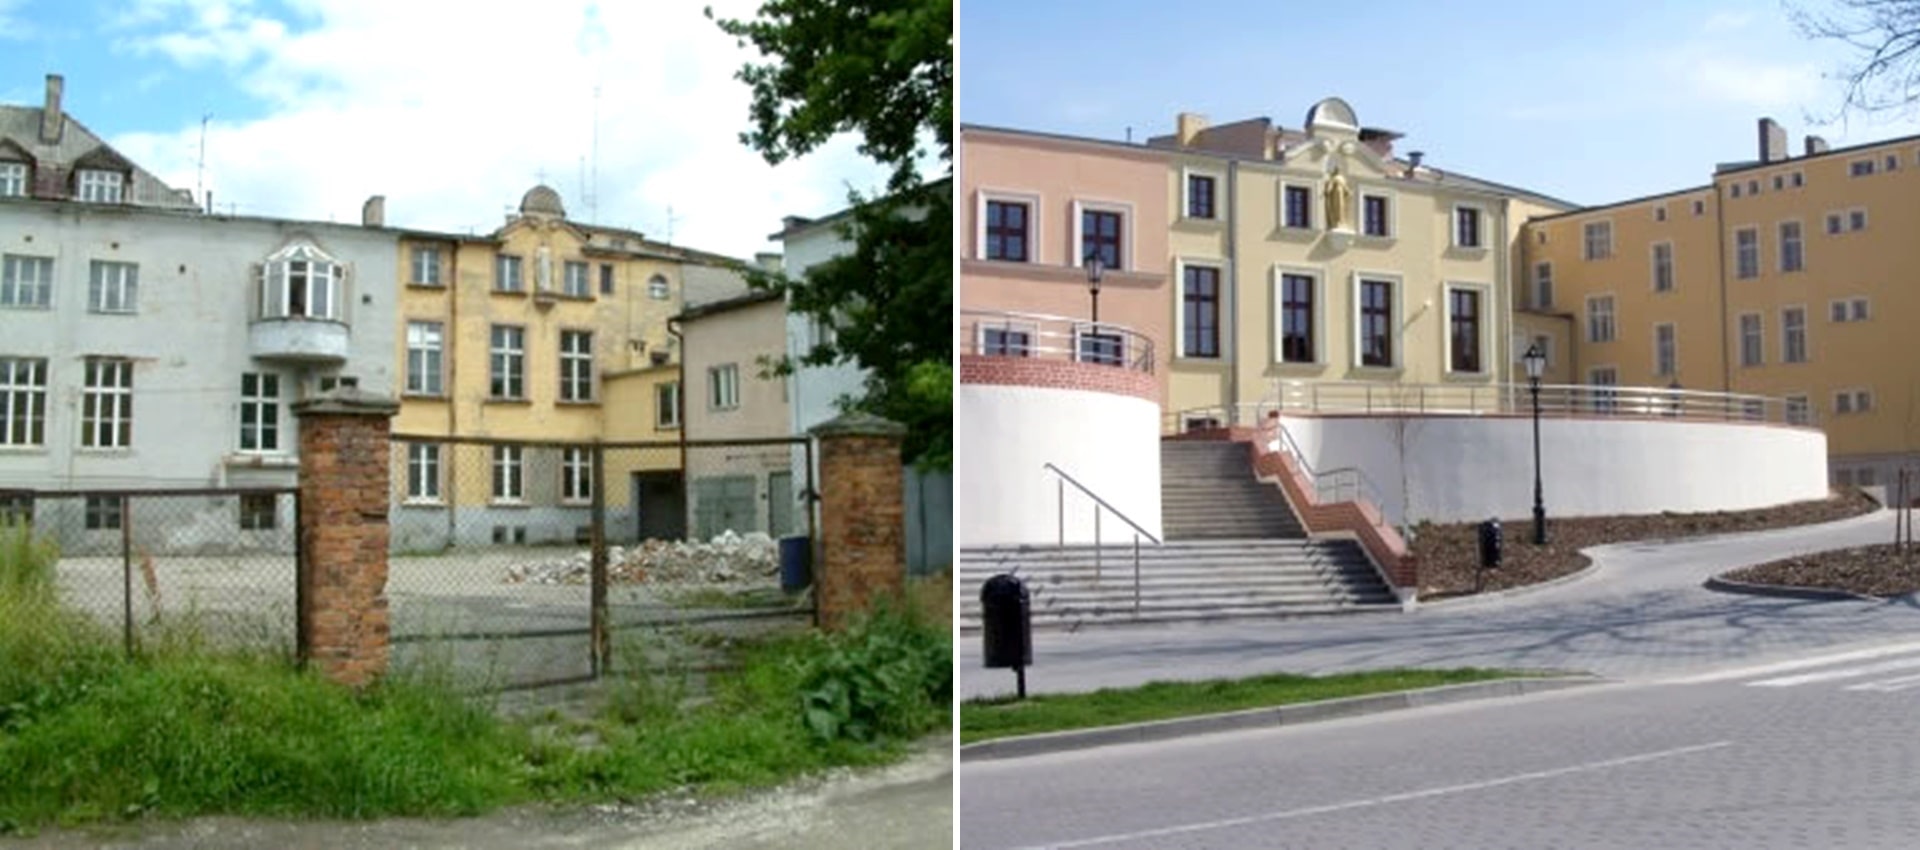 Dwa połączone zdjęcia przedstawiające zdegradowane budynki i budynki odnowione.